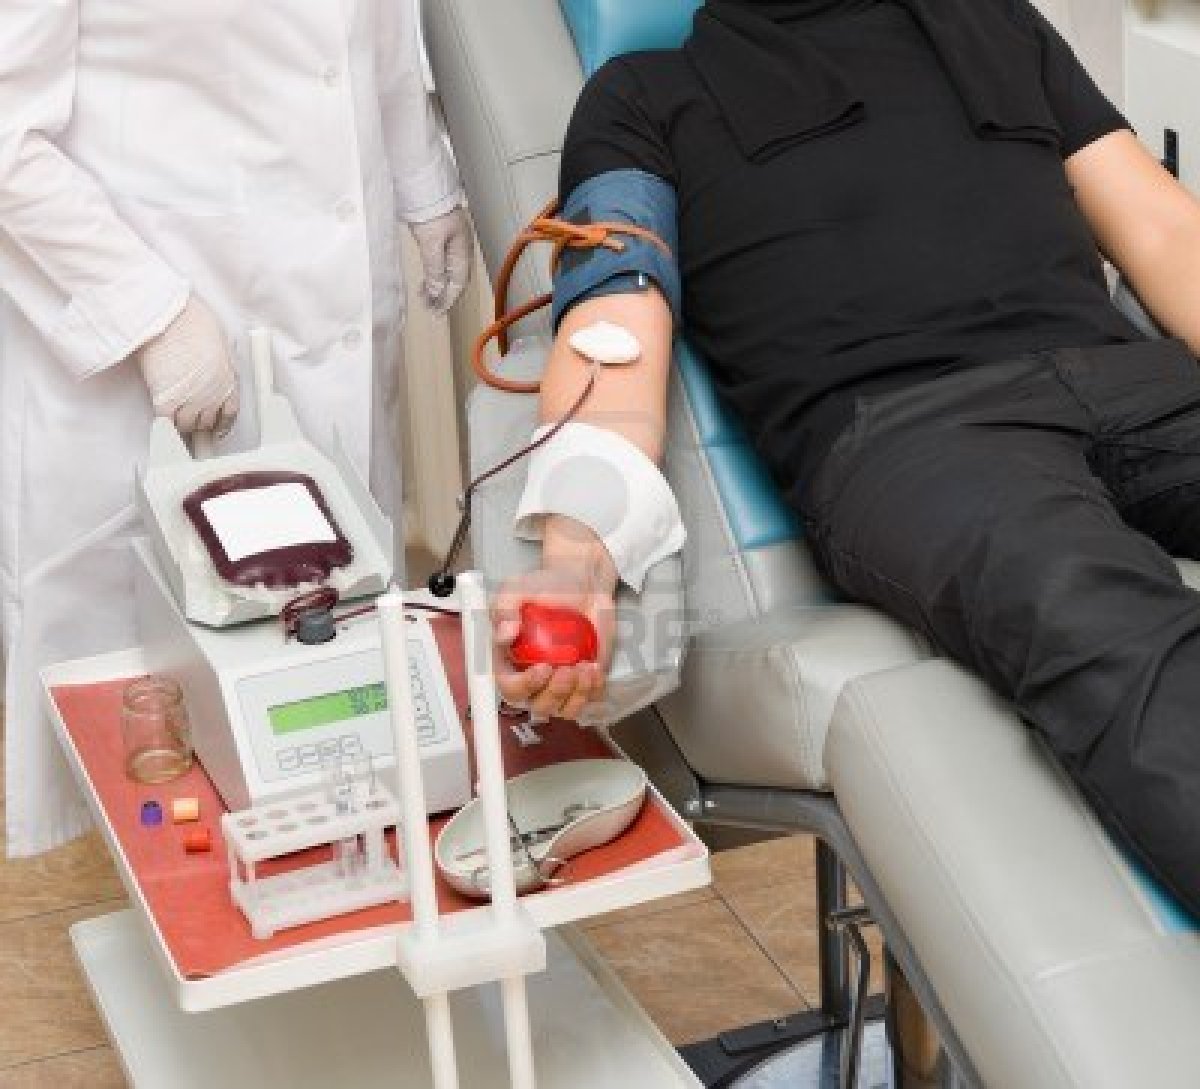 Nueva convocatoria para donar sangre en el Centro de Salud el 4 de abril